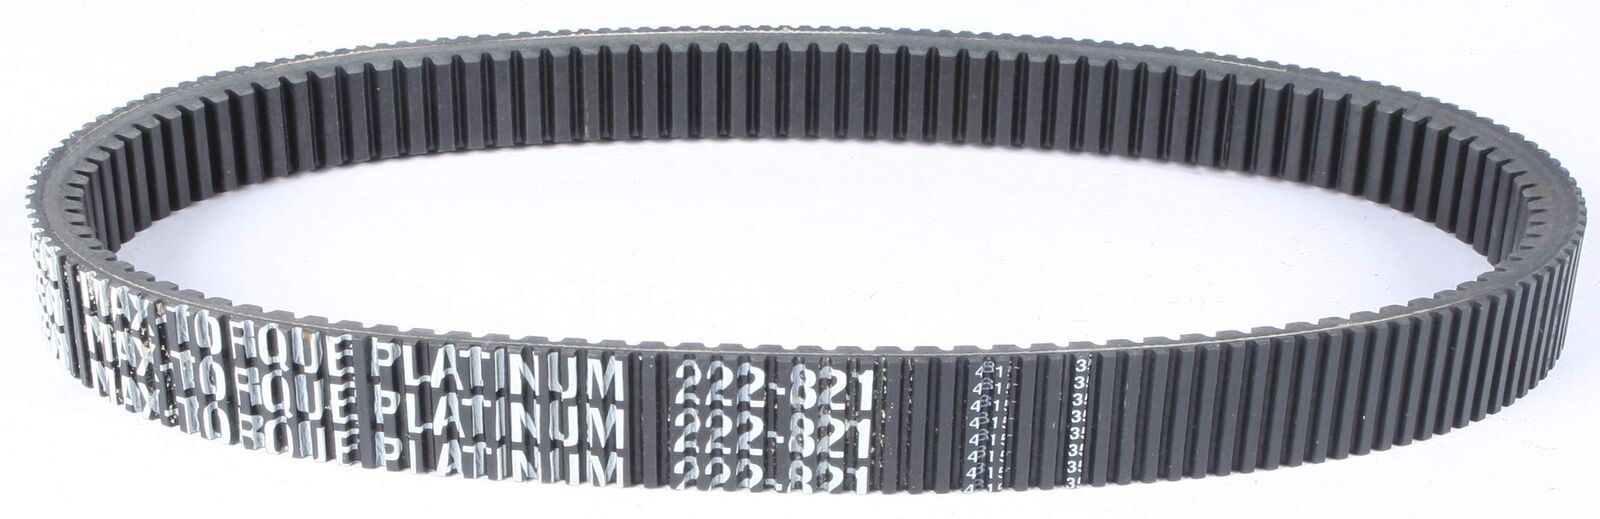 Sp1 Max-Torque Platinum Belt 47-3284